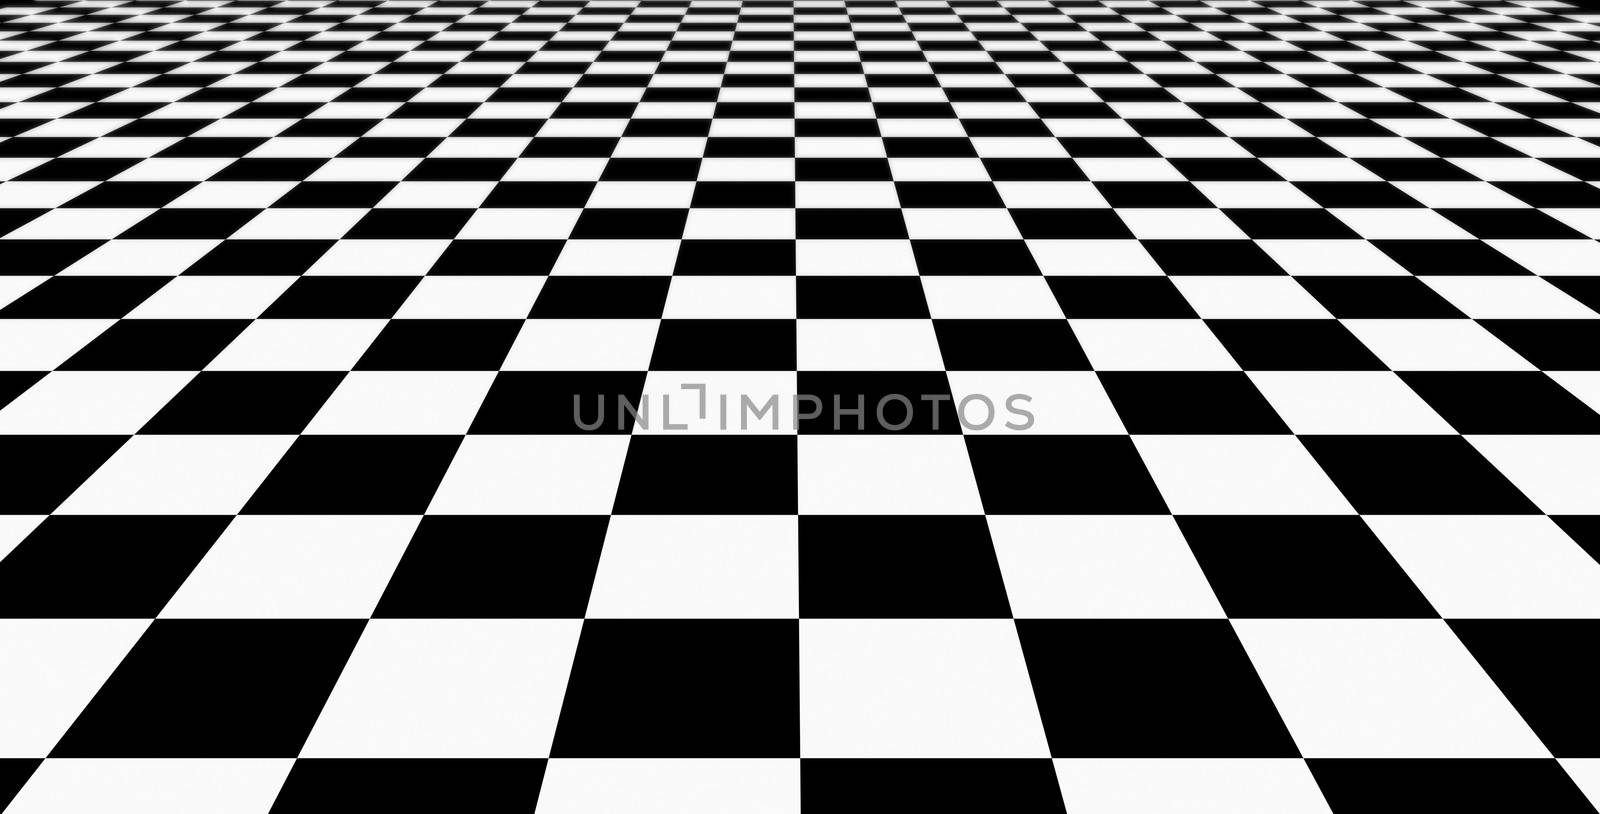 Black-white checkered plane by vitanovski